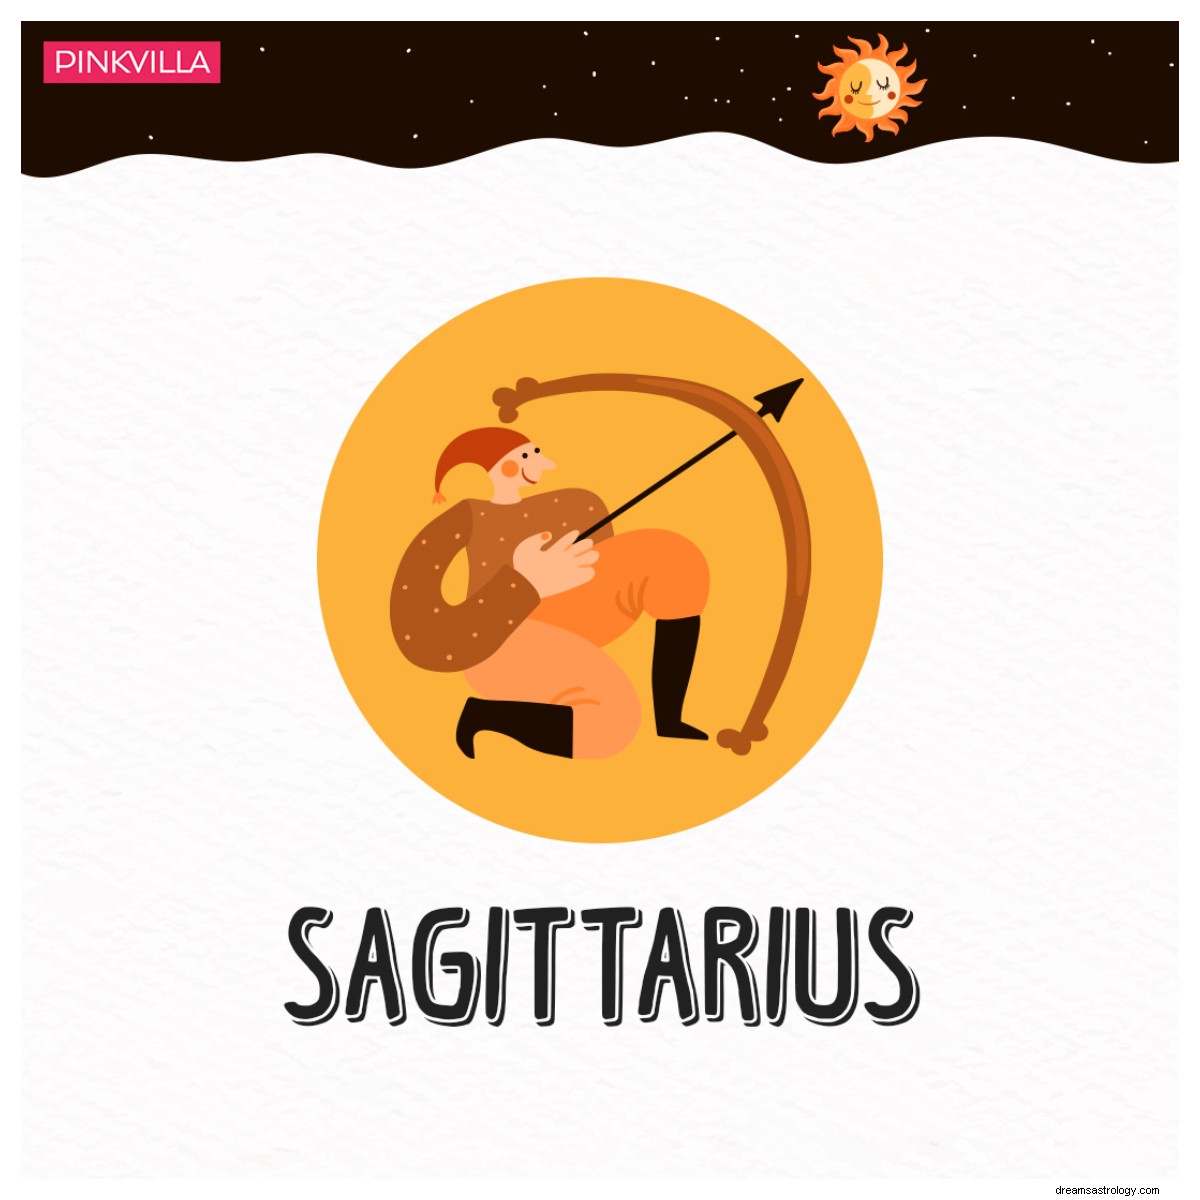 Dall Acquario al Sagittario:4 segni zodiacali privi di tatto e irrequieti 